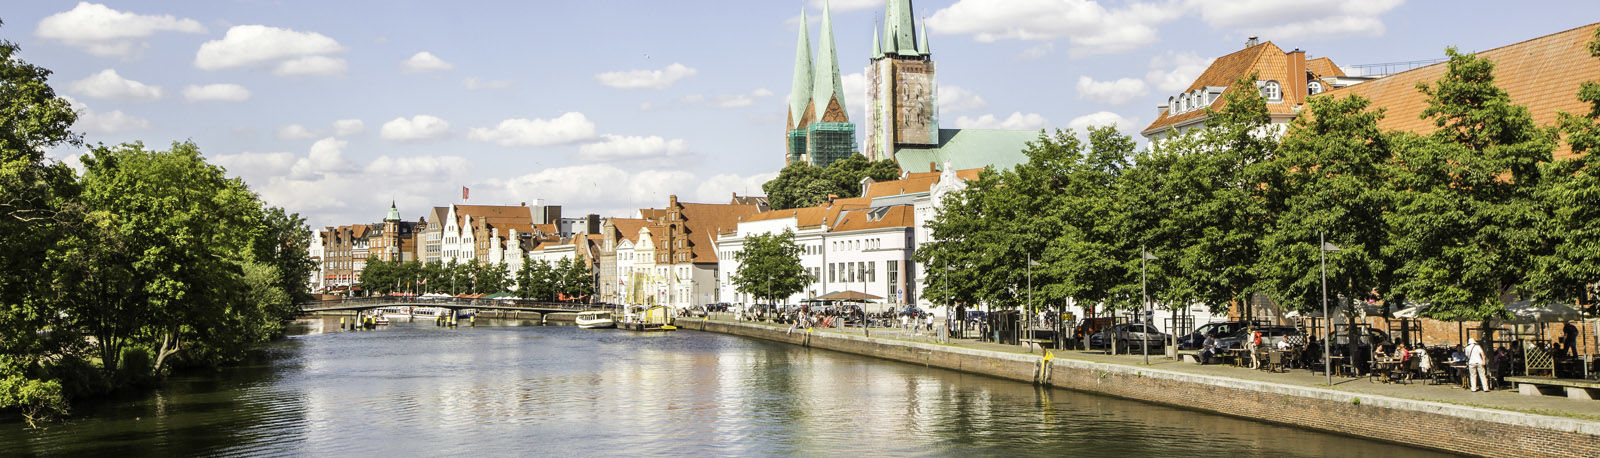 Lübeck Altstadt, im Vordergrund die Trave © MOSTOVYE, 2016 Thinkstock